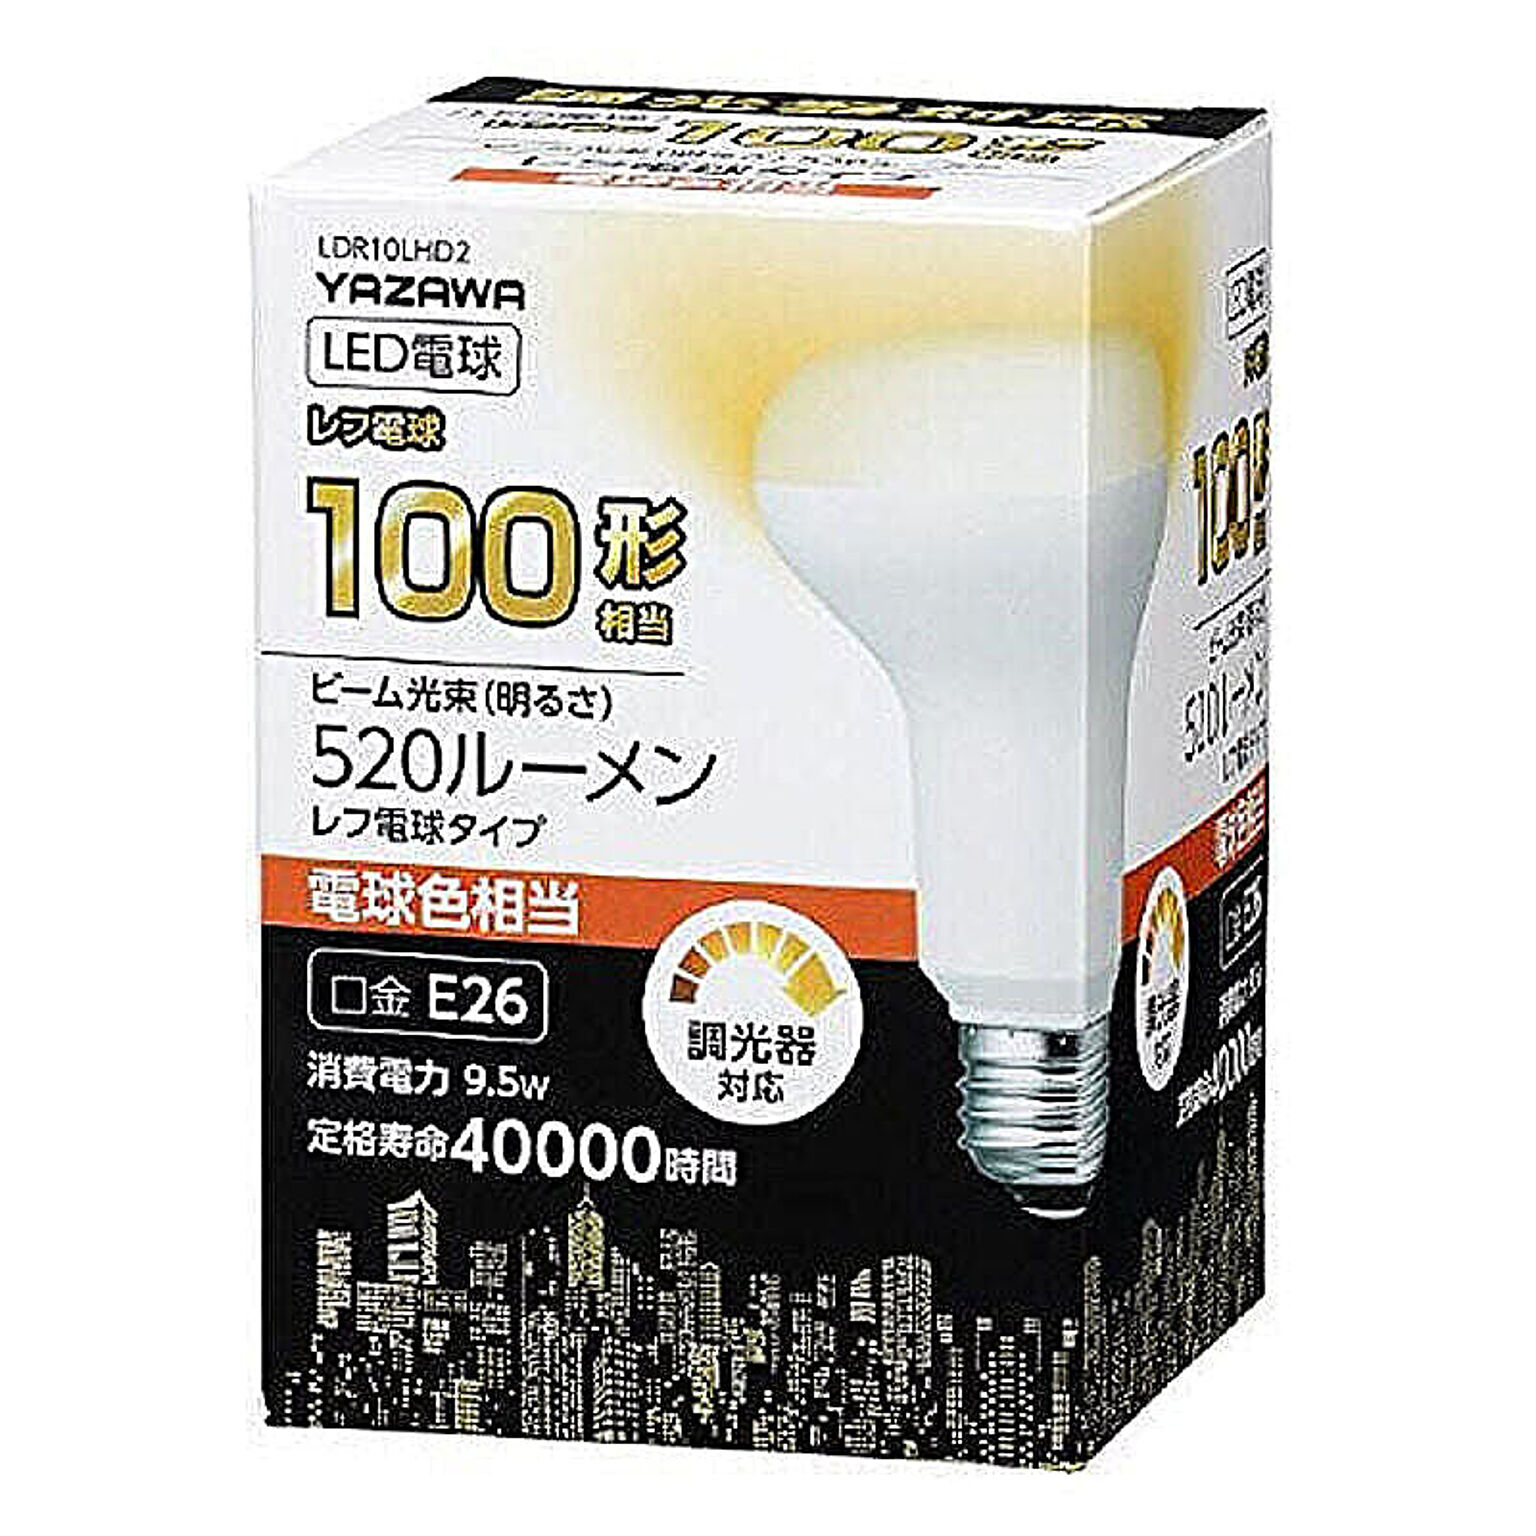 5個セット YAZAWA R80レフ形LED 電球色 調光対応 LDR10LHD2X5 管理No. 4589453401146